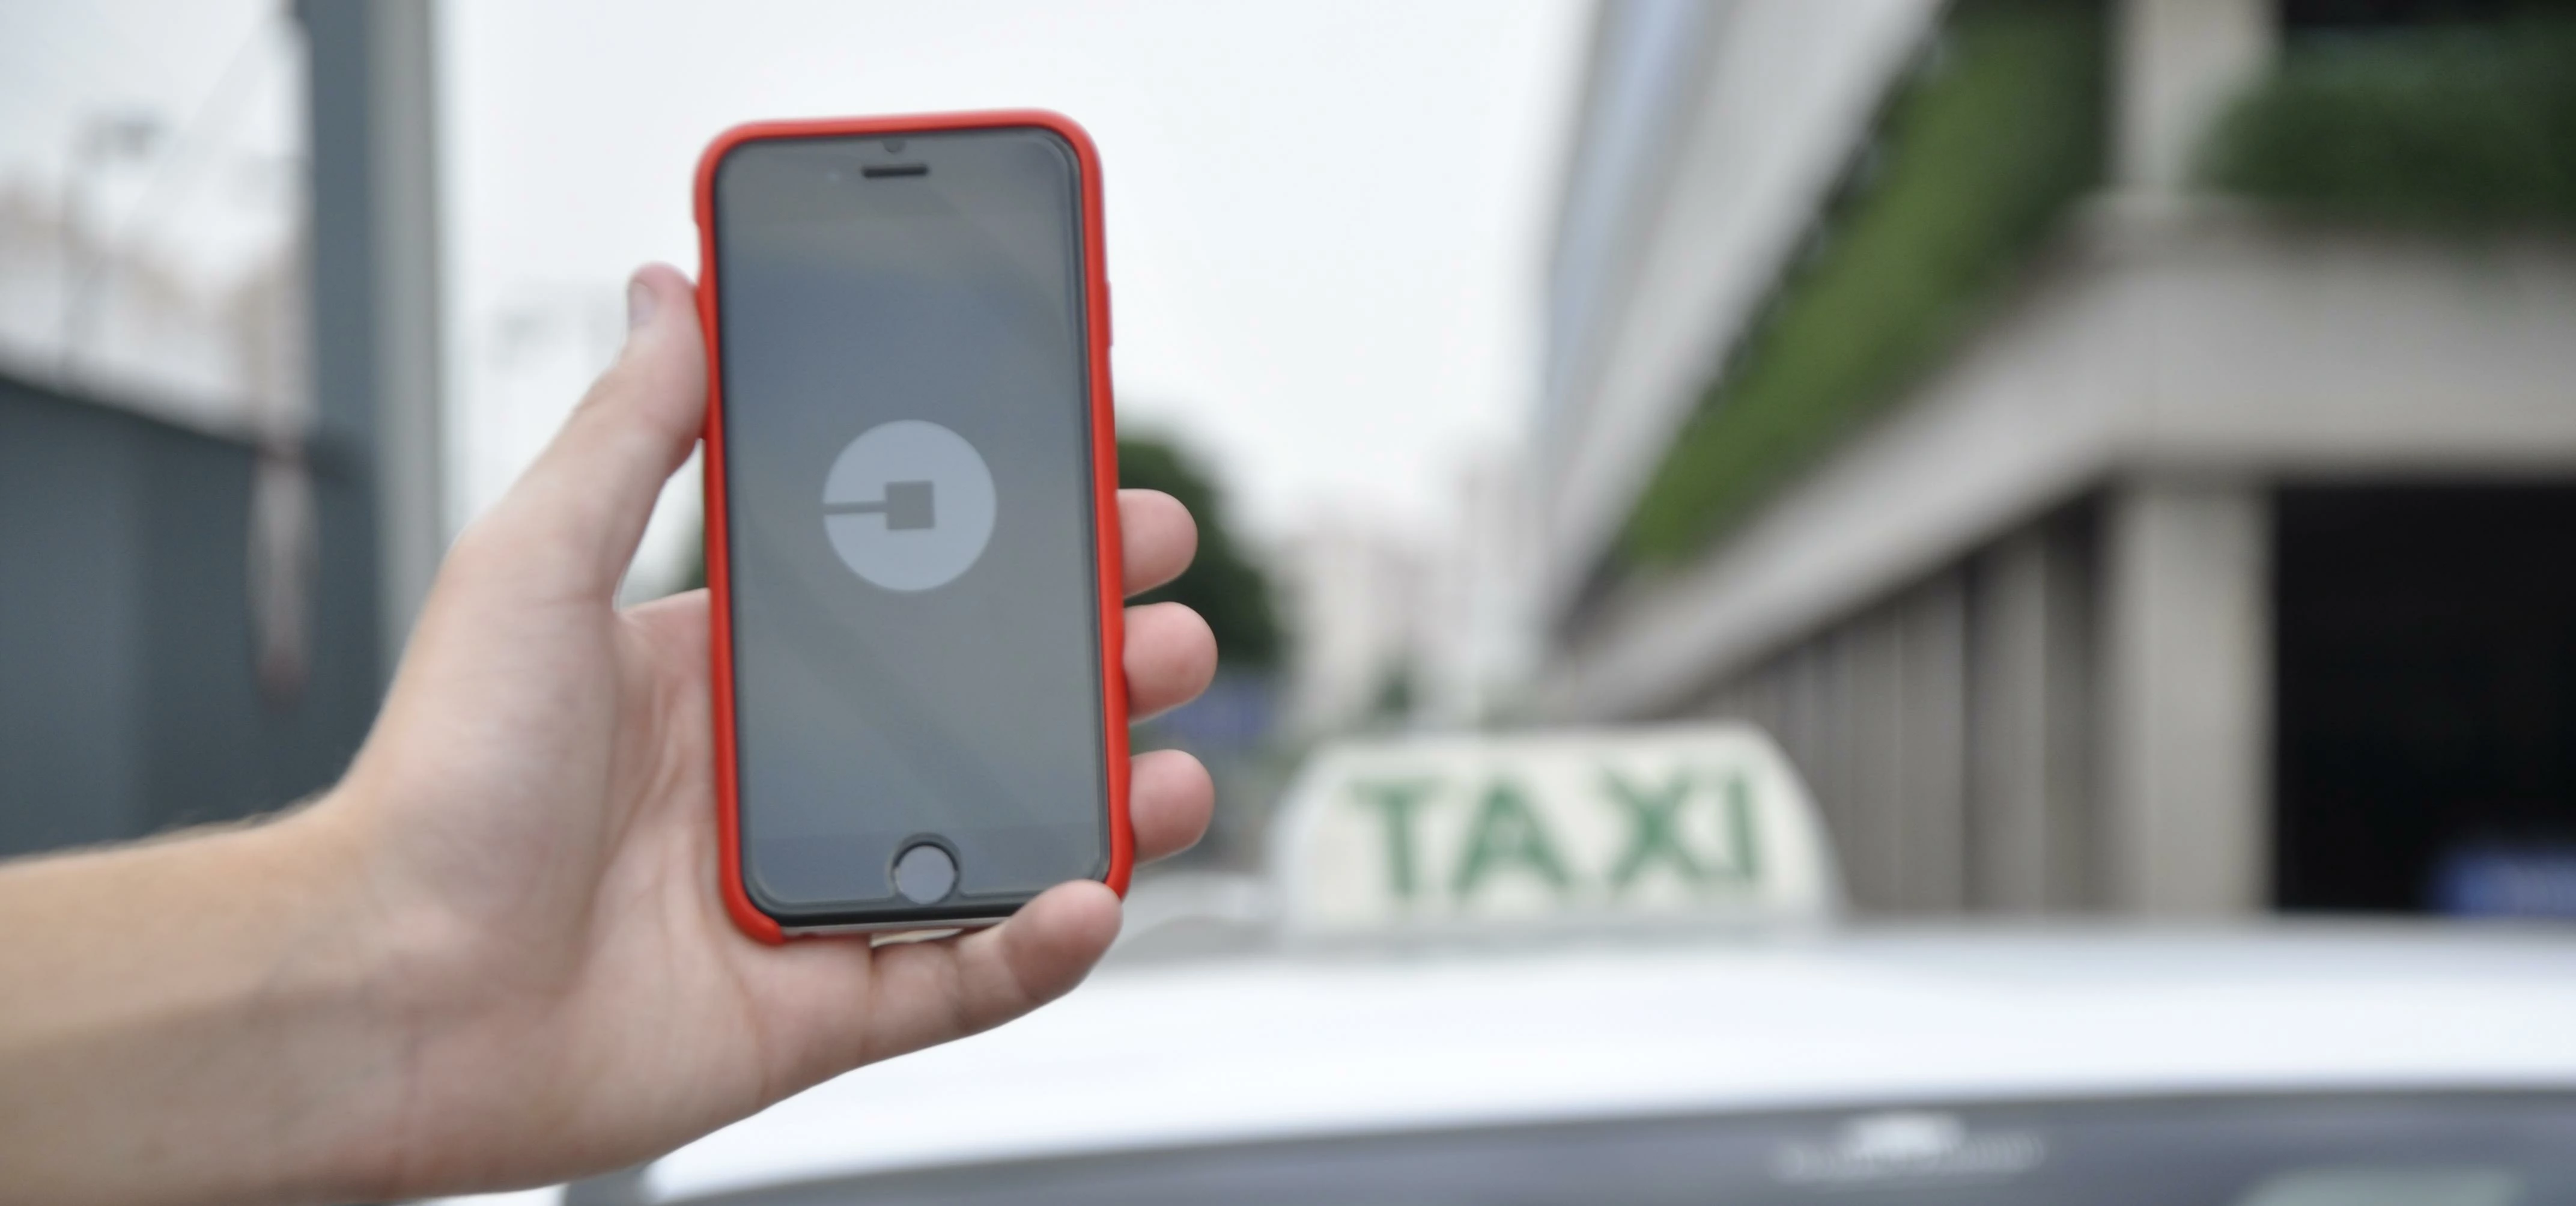 Uber e táxis em São Paulo